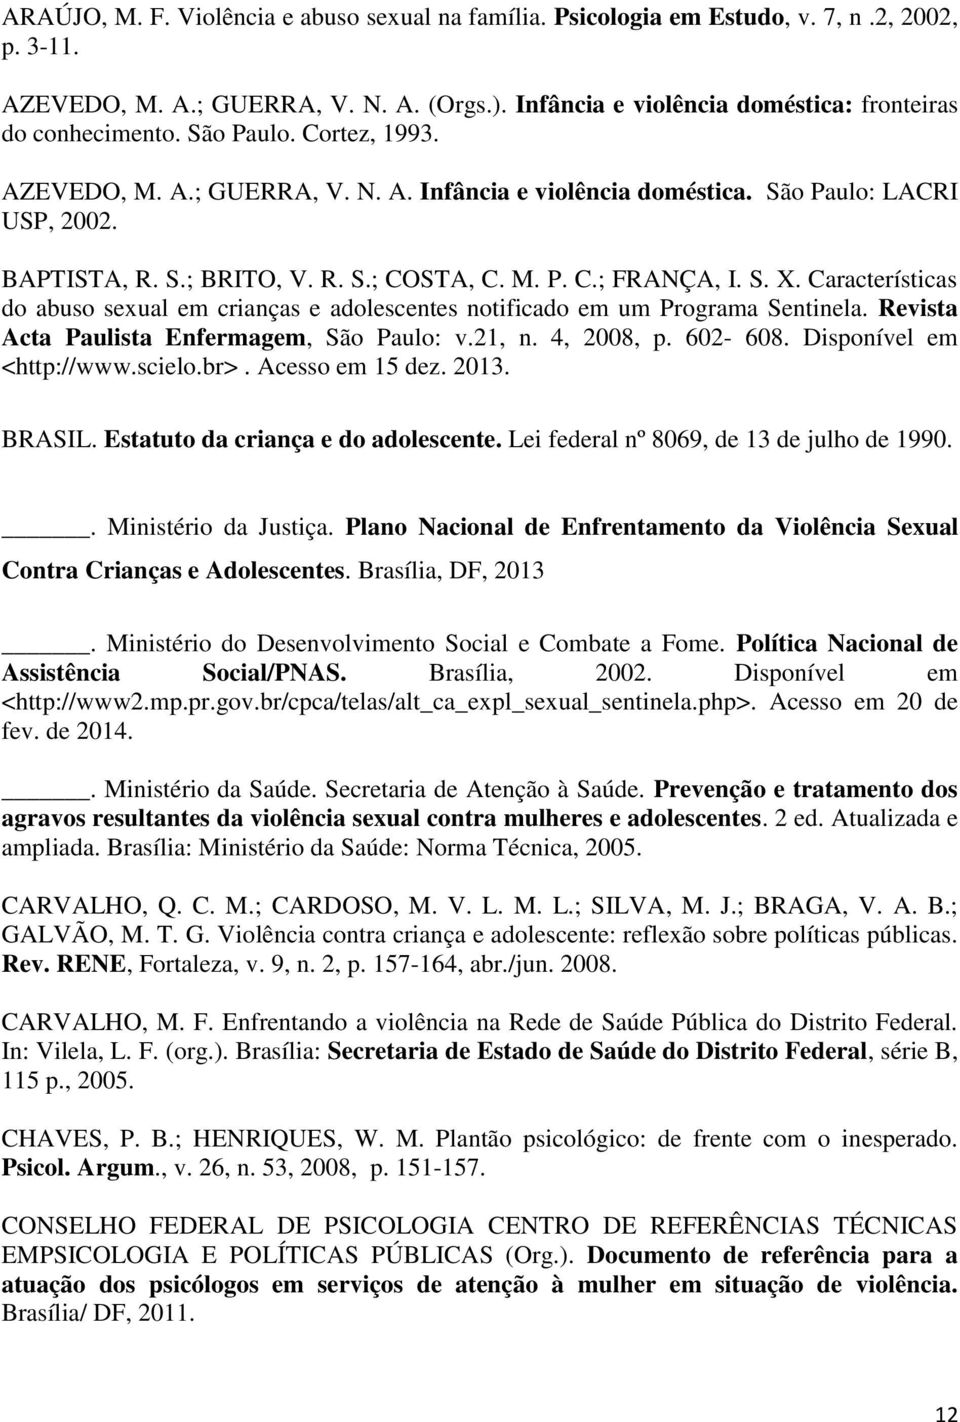 Características do abuso sexual em crianças e adolescentes notificado em um Programa Sentinela. Revista Acta Paulista Enfermagem, São Paulo: v.21, n. 4, 2008, p. 602-608. Disponível em <http://www.